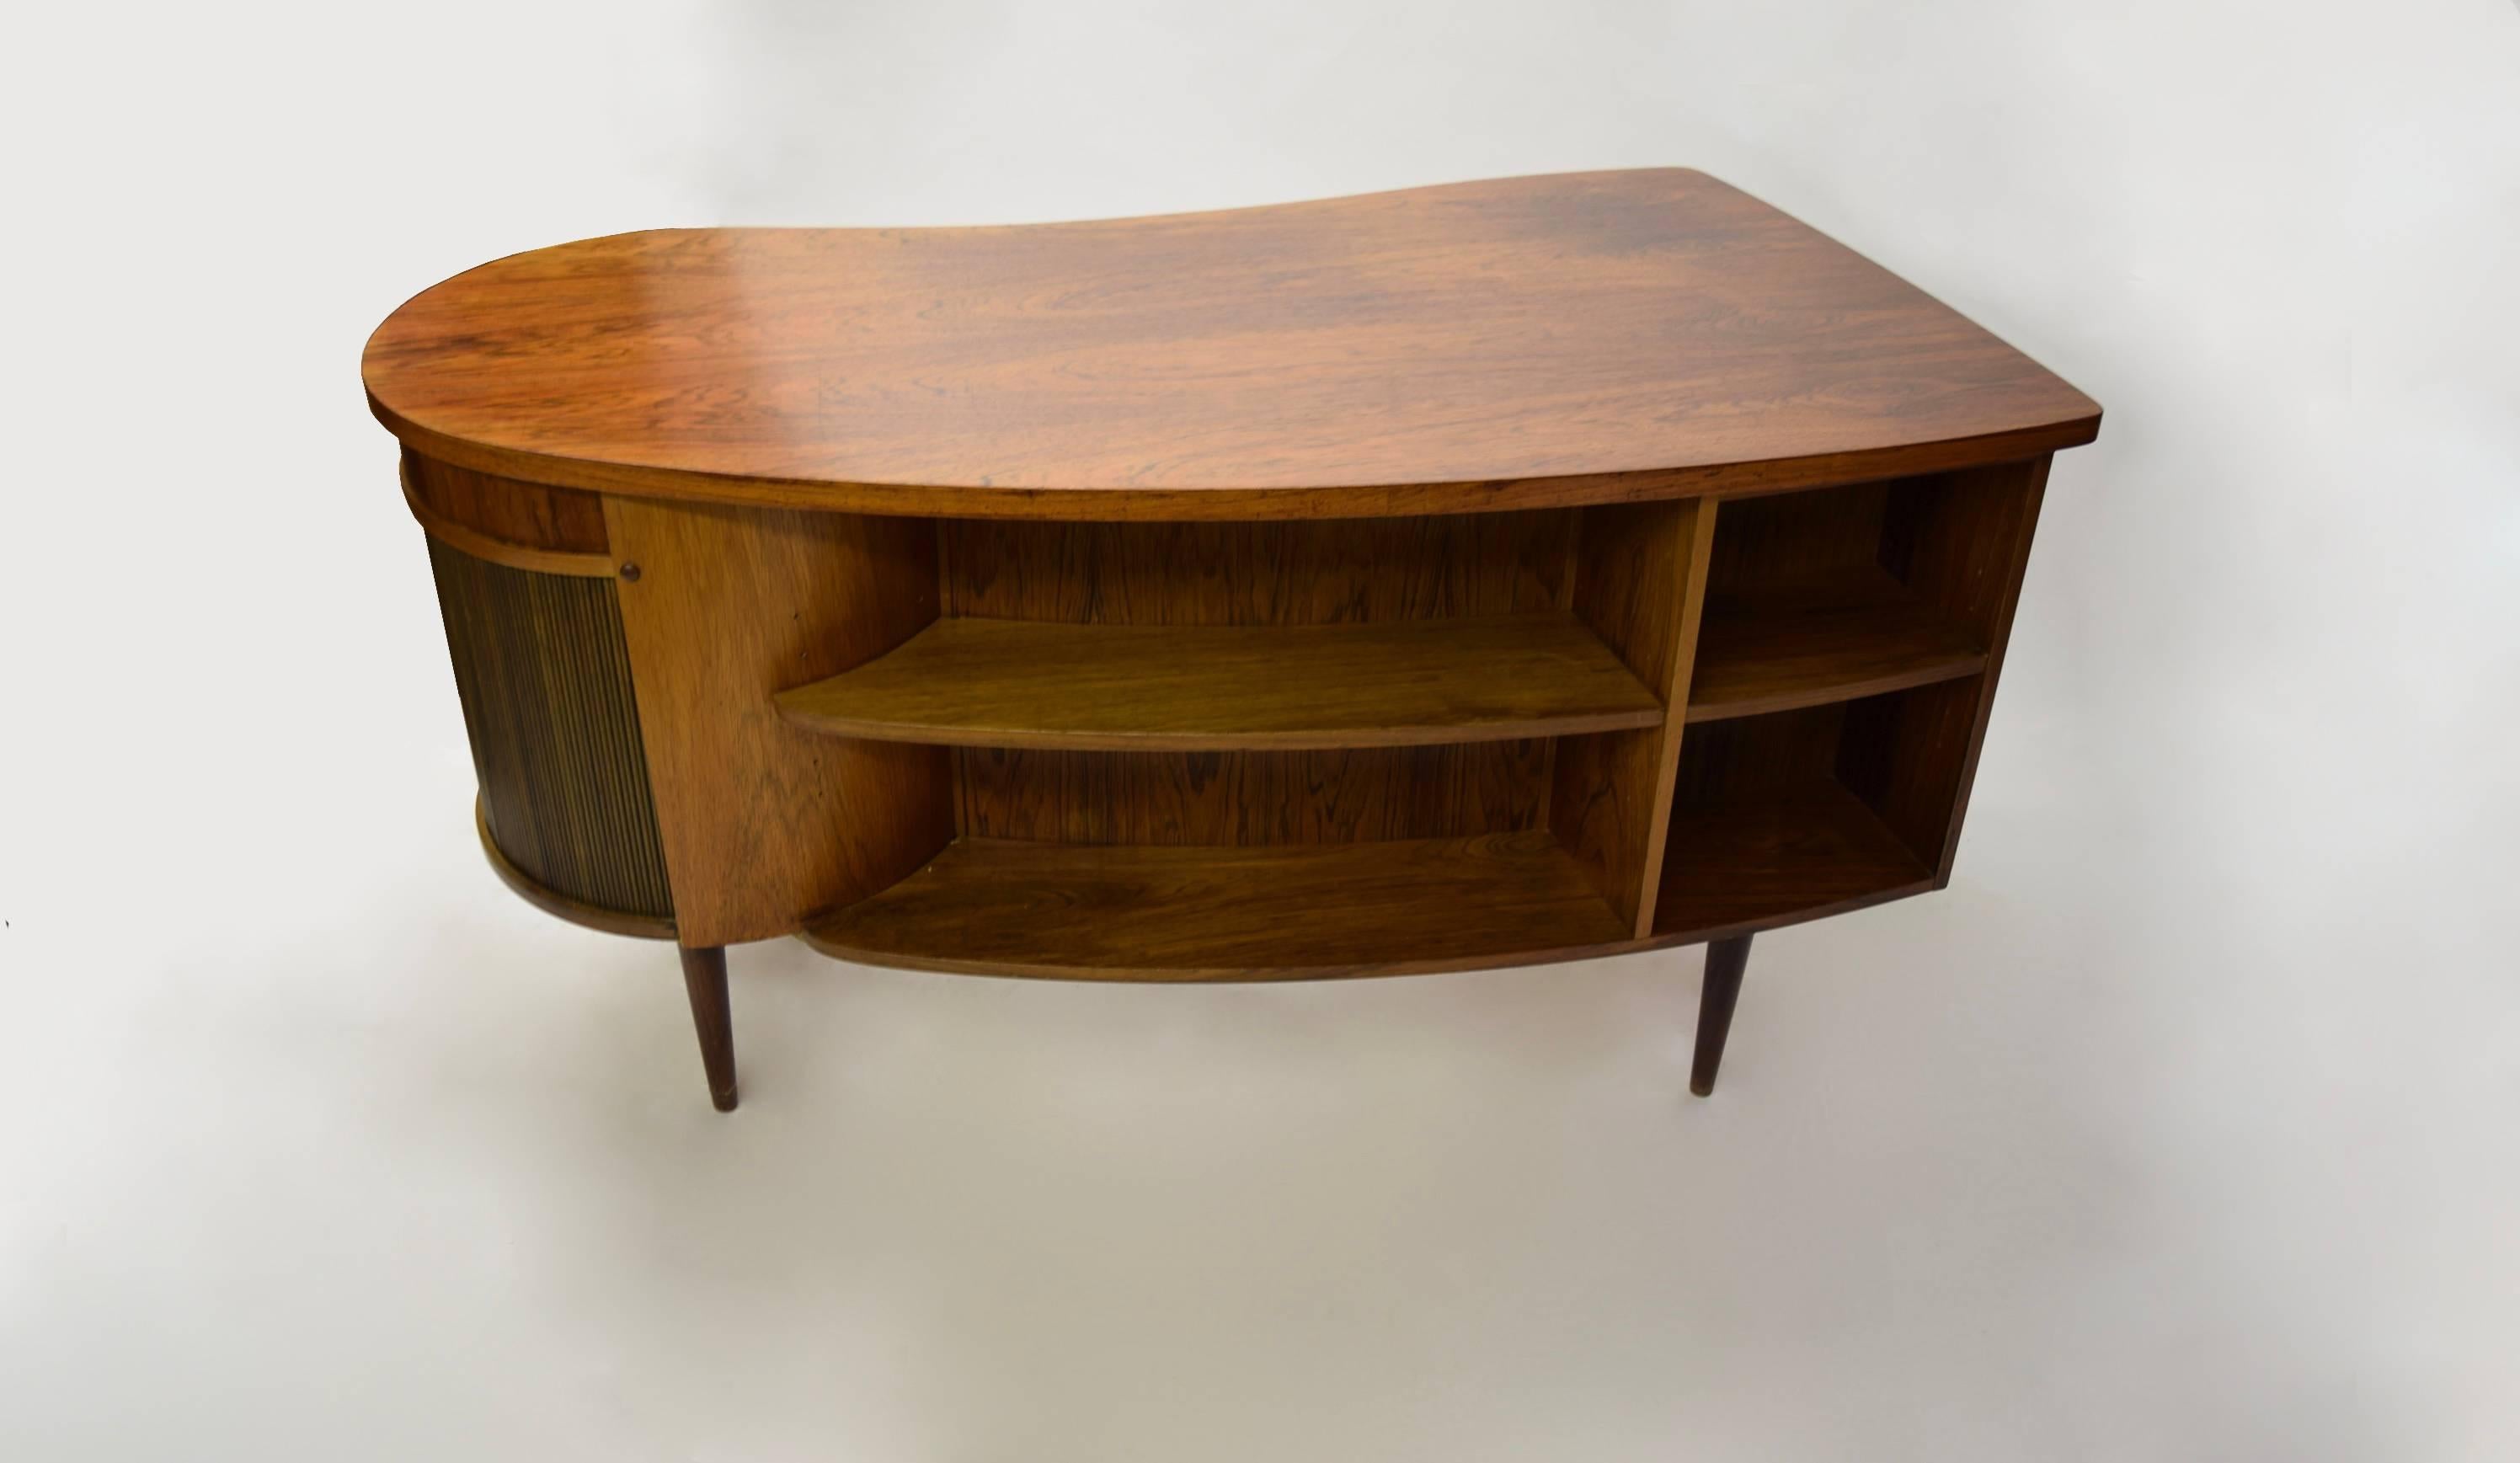 Danish Rosewood Desk by Kai Kristiansen for FM Furniture, 1956, Made in Denmark